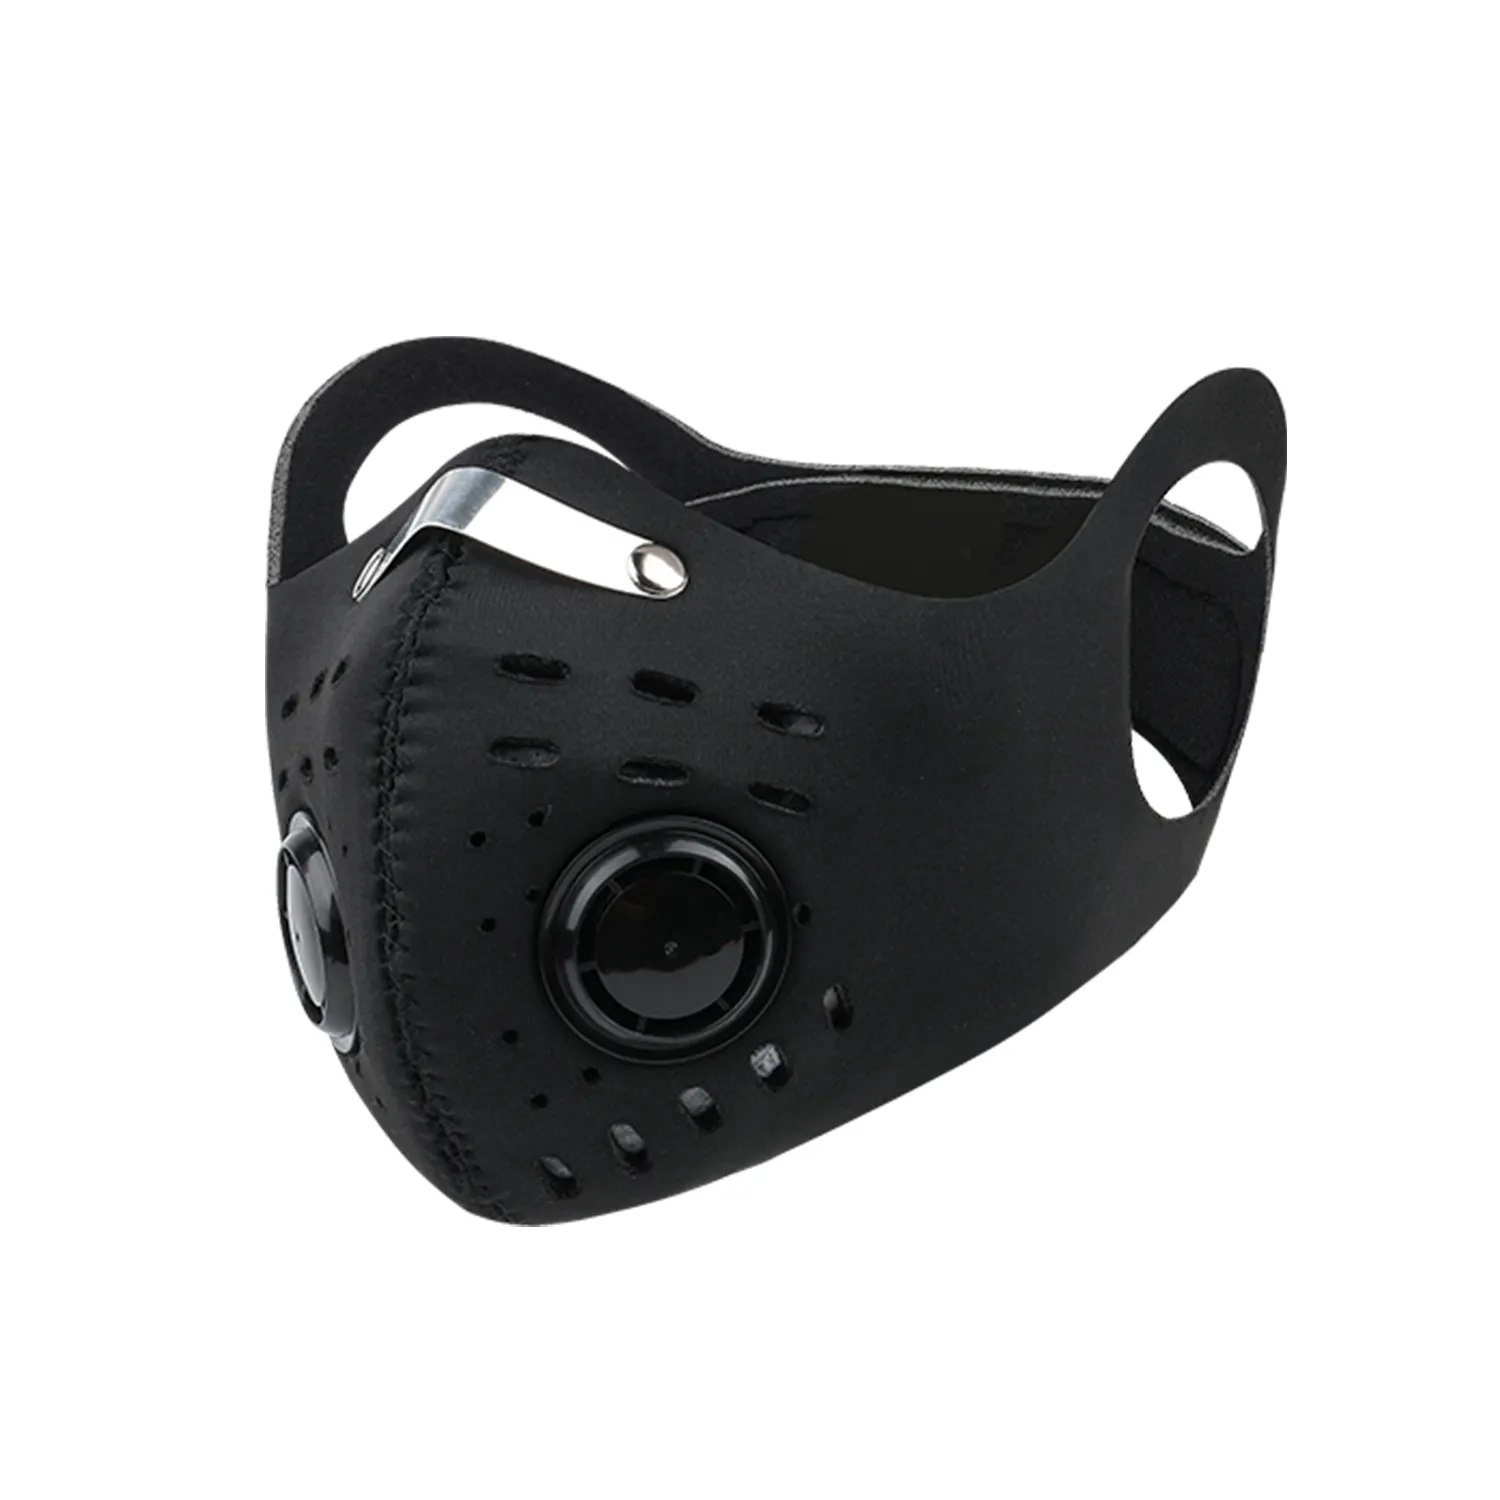 Fietsen gezichtsmasker geactiveerd anti-vervuiling bescherming outdoor tandwiel maskers mannen vrouwen anti-stof druppel gezichtsmasker met filter voor fietsen